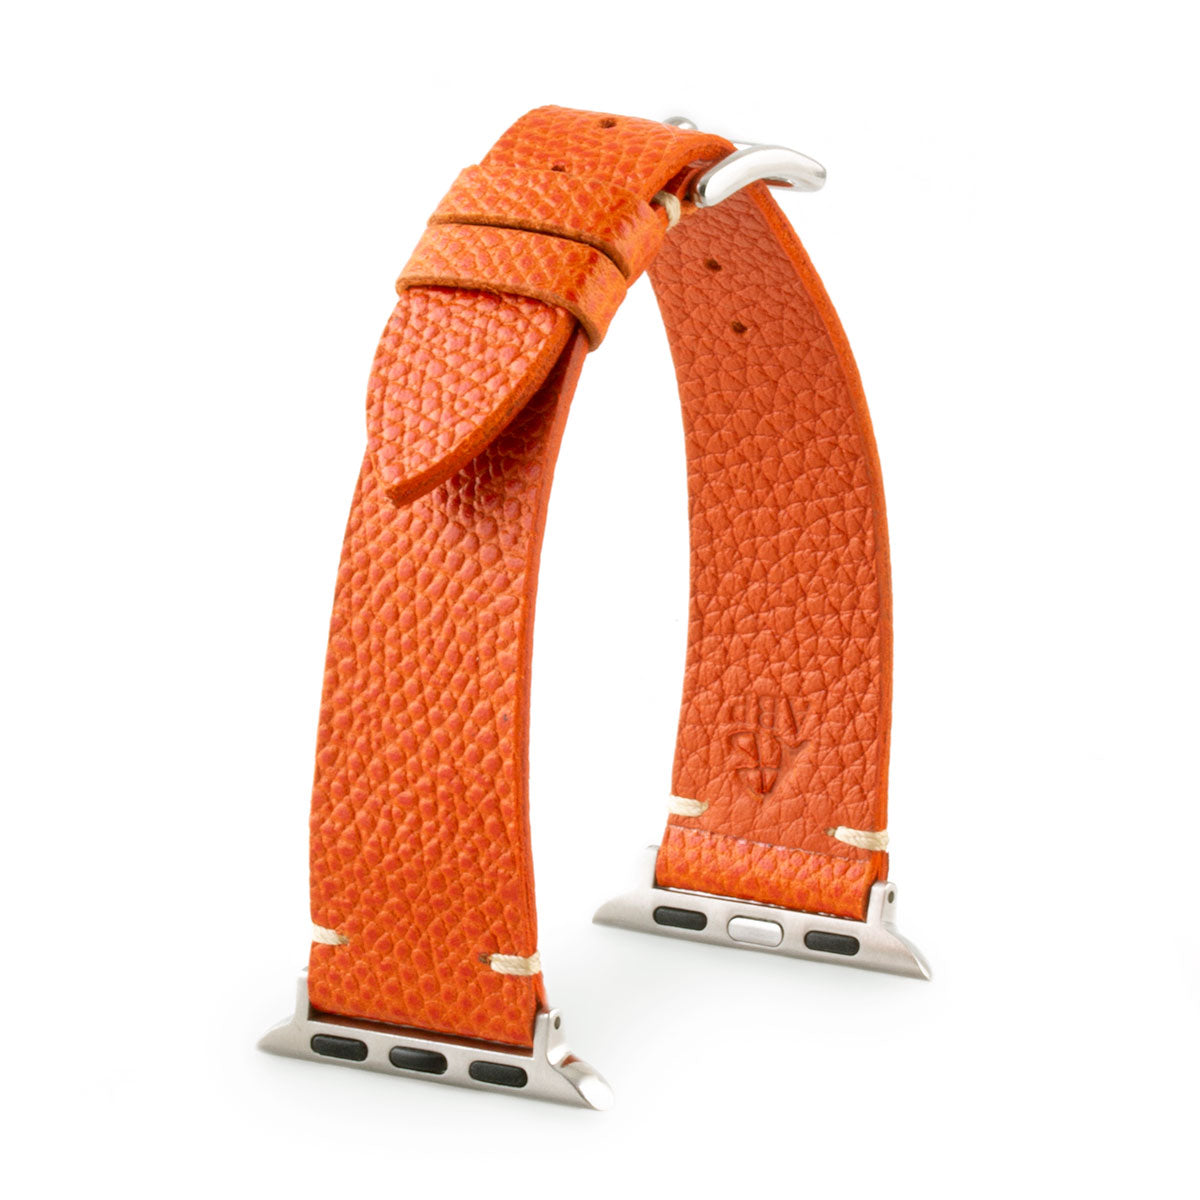 Bracelet Apple Watch strap Tribute to Hermès veau grainé grained calf orange